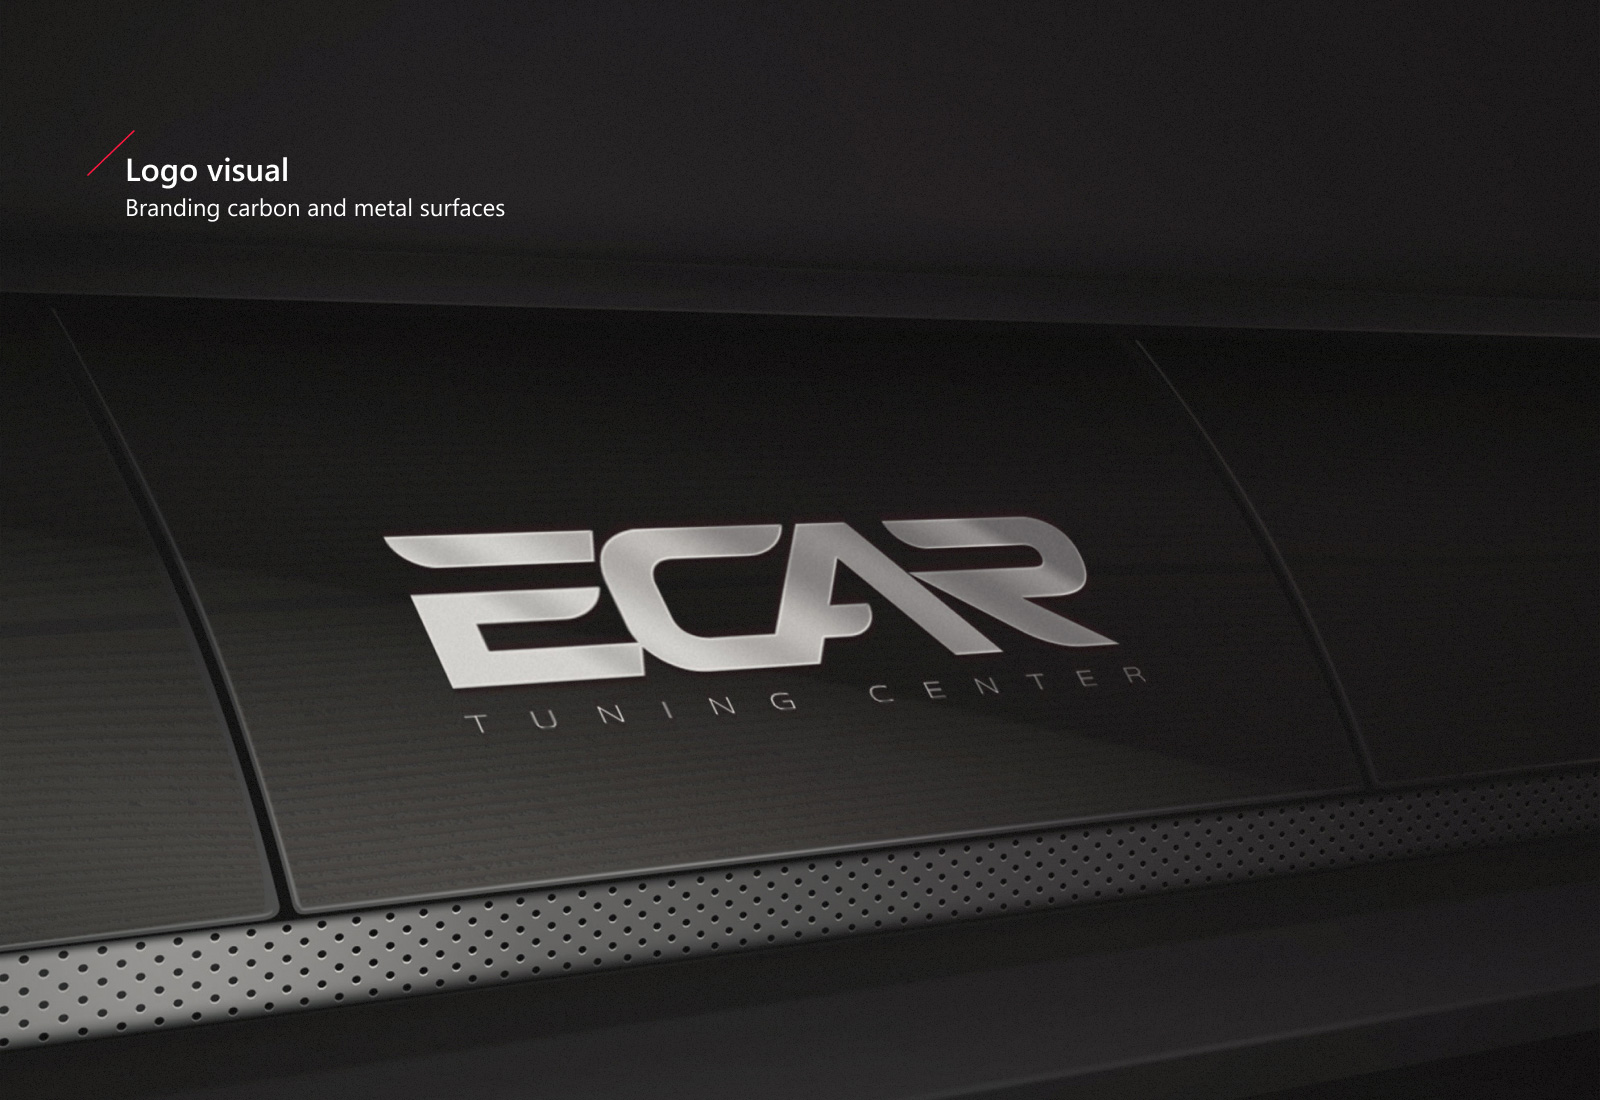 Ecar5